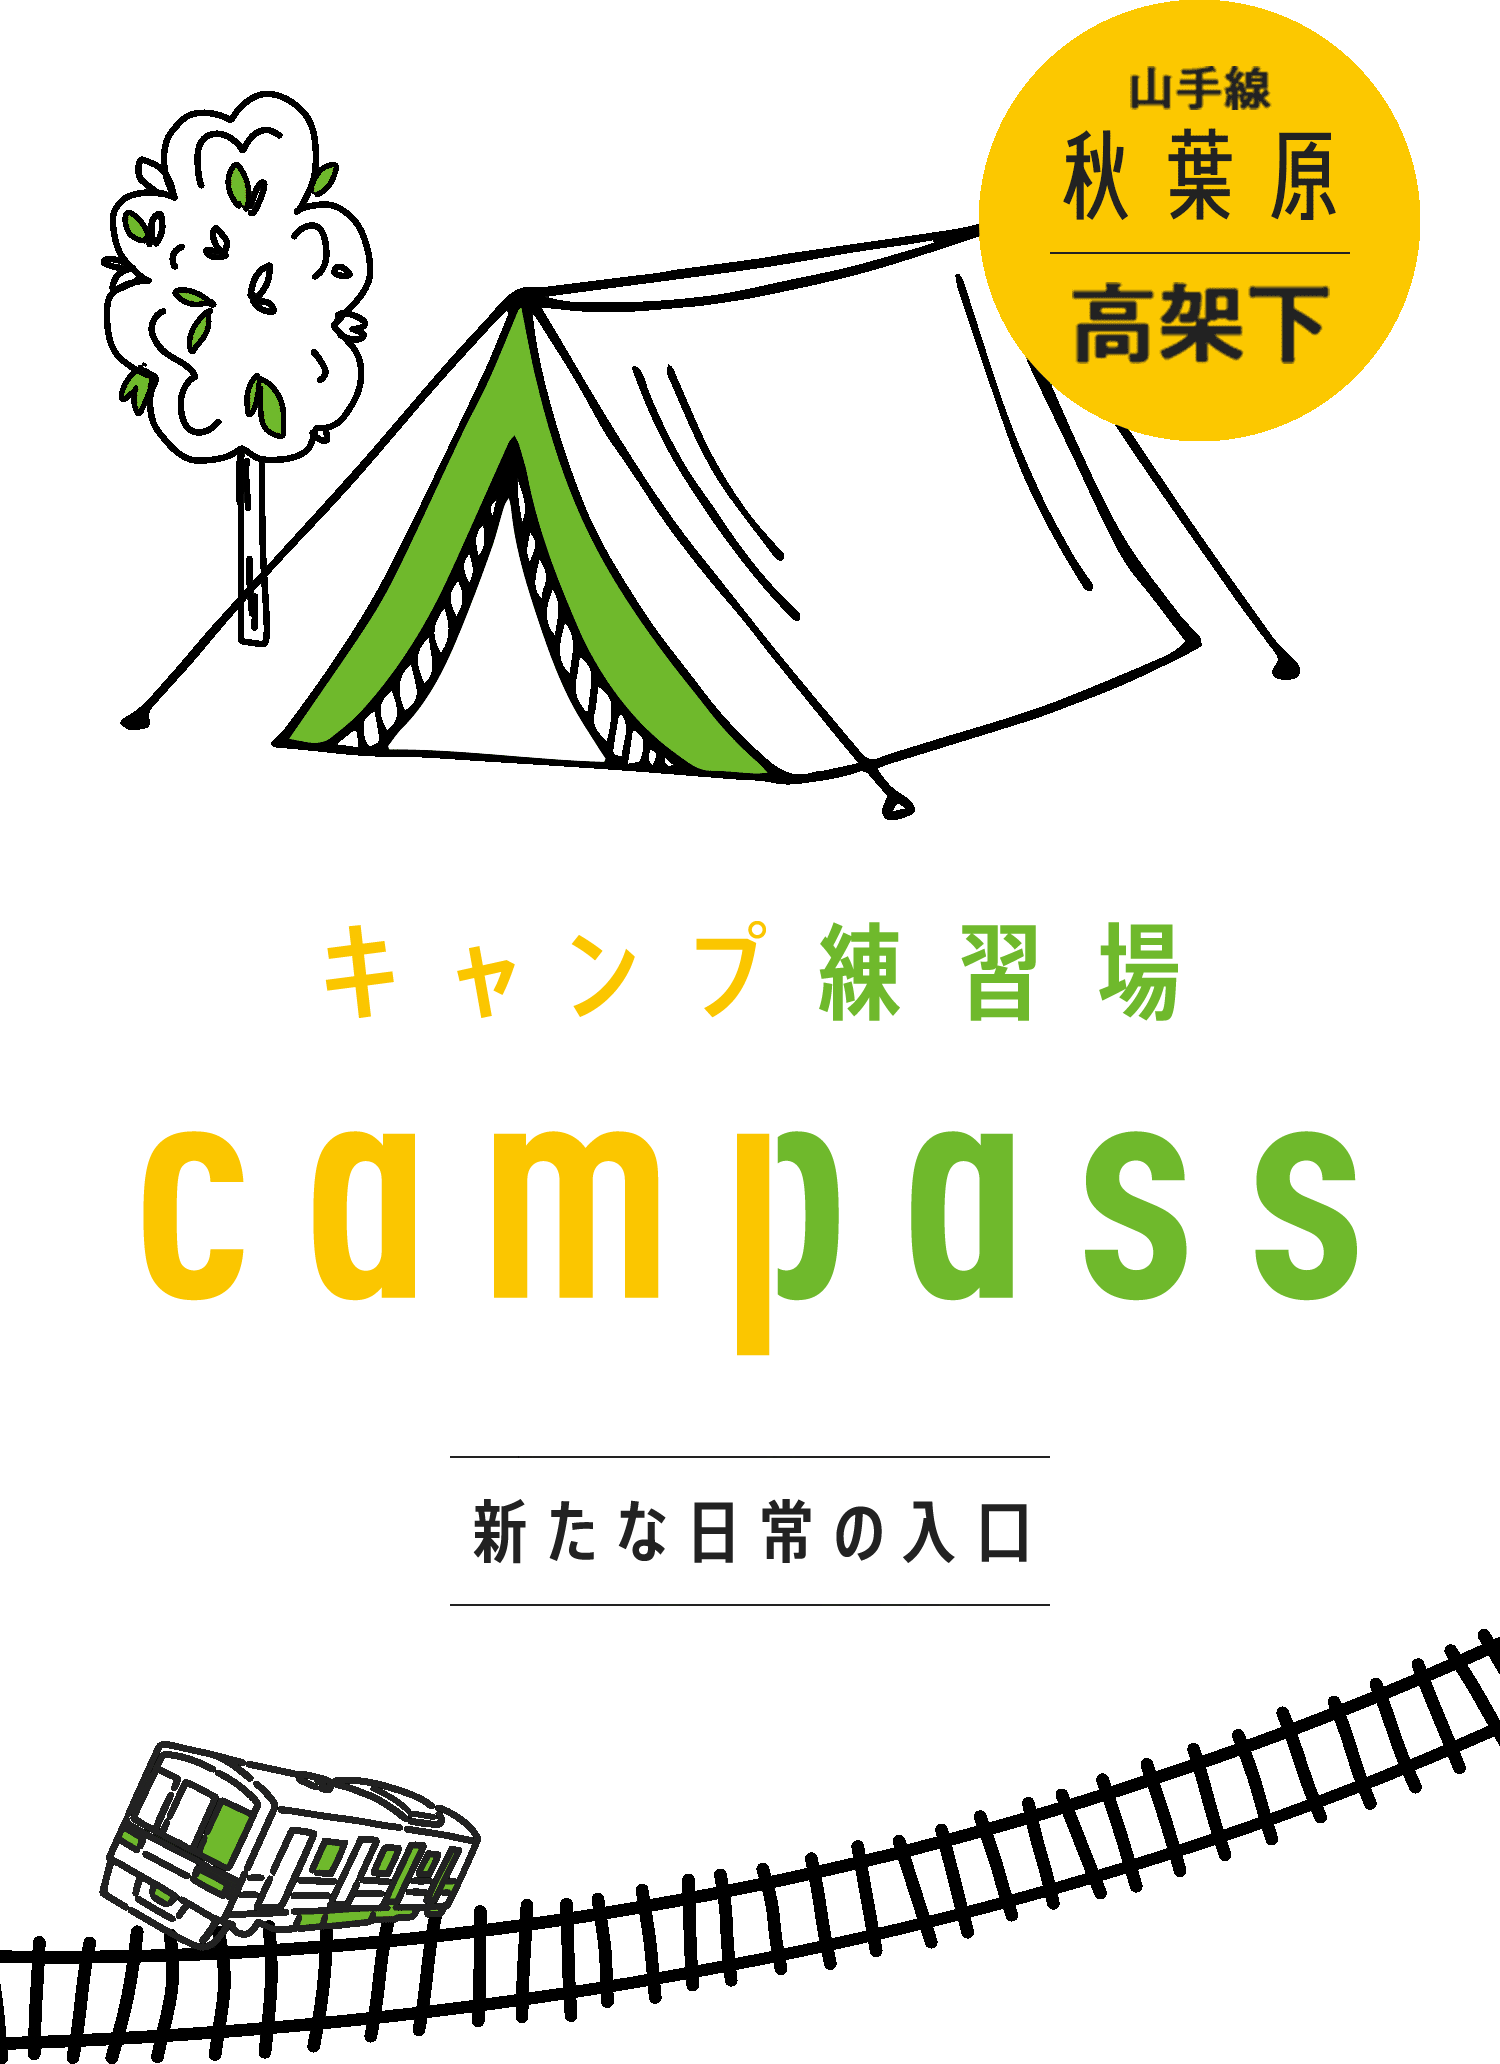 キャンプ練習場 campass